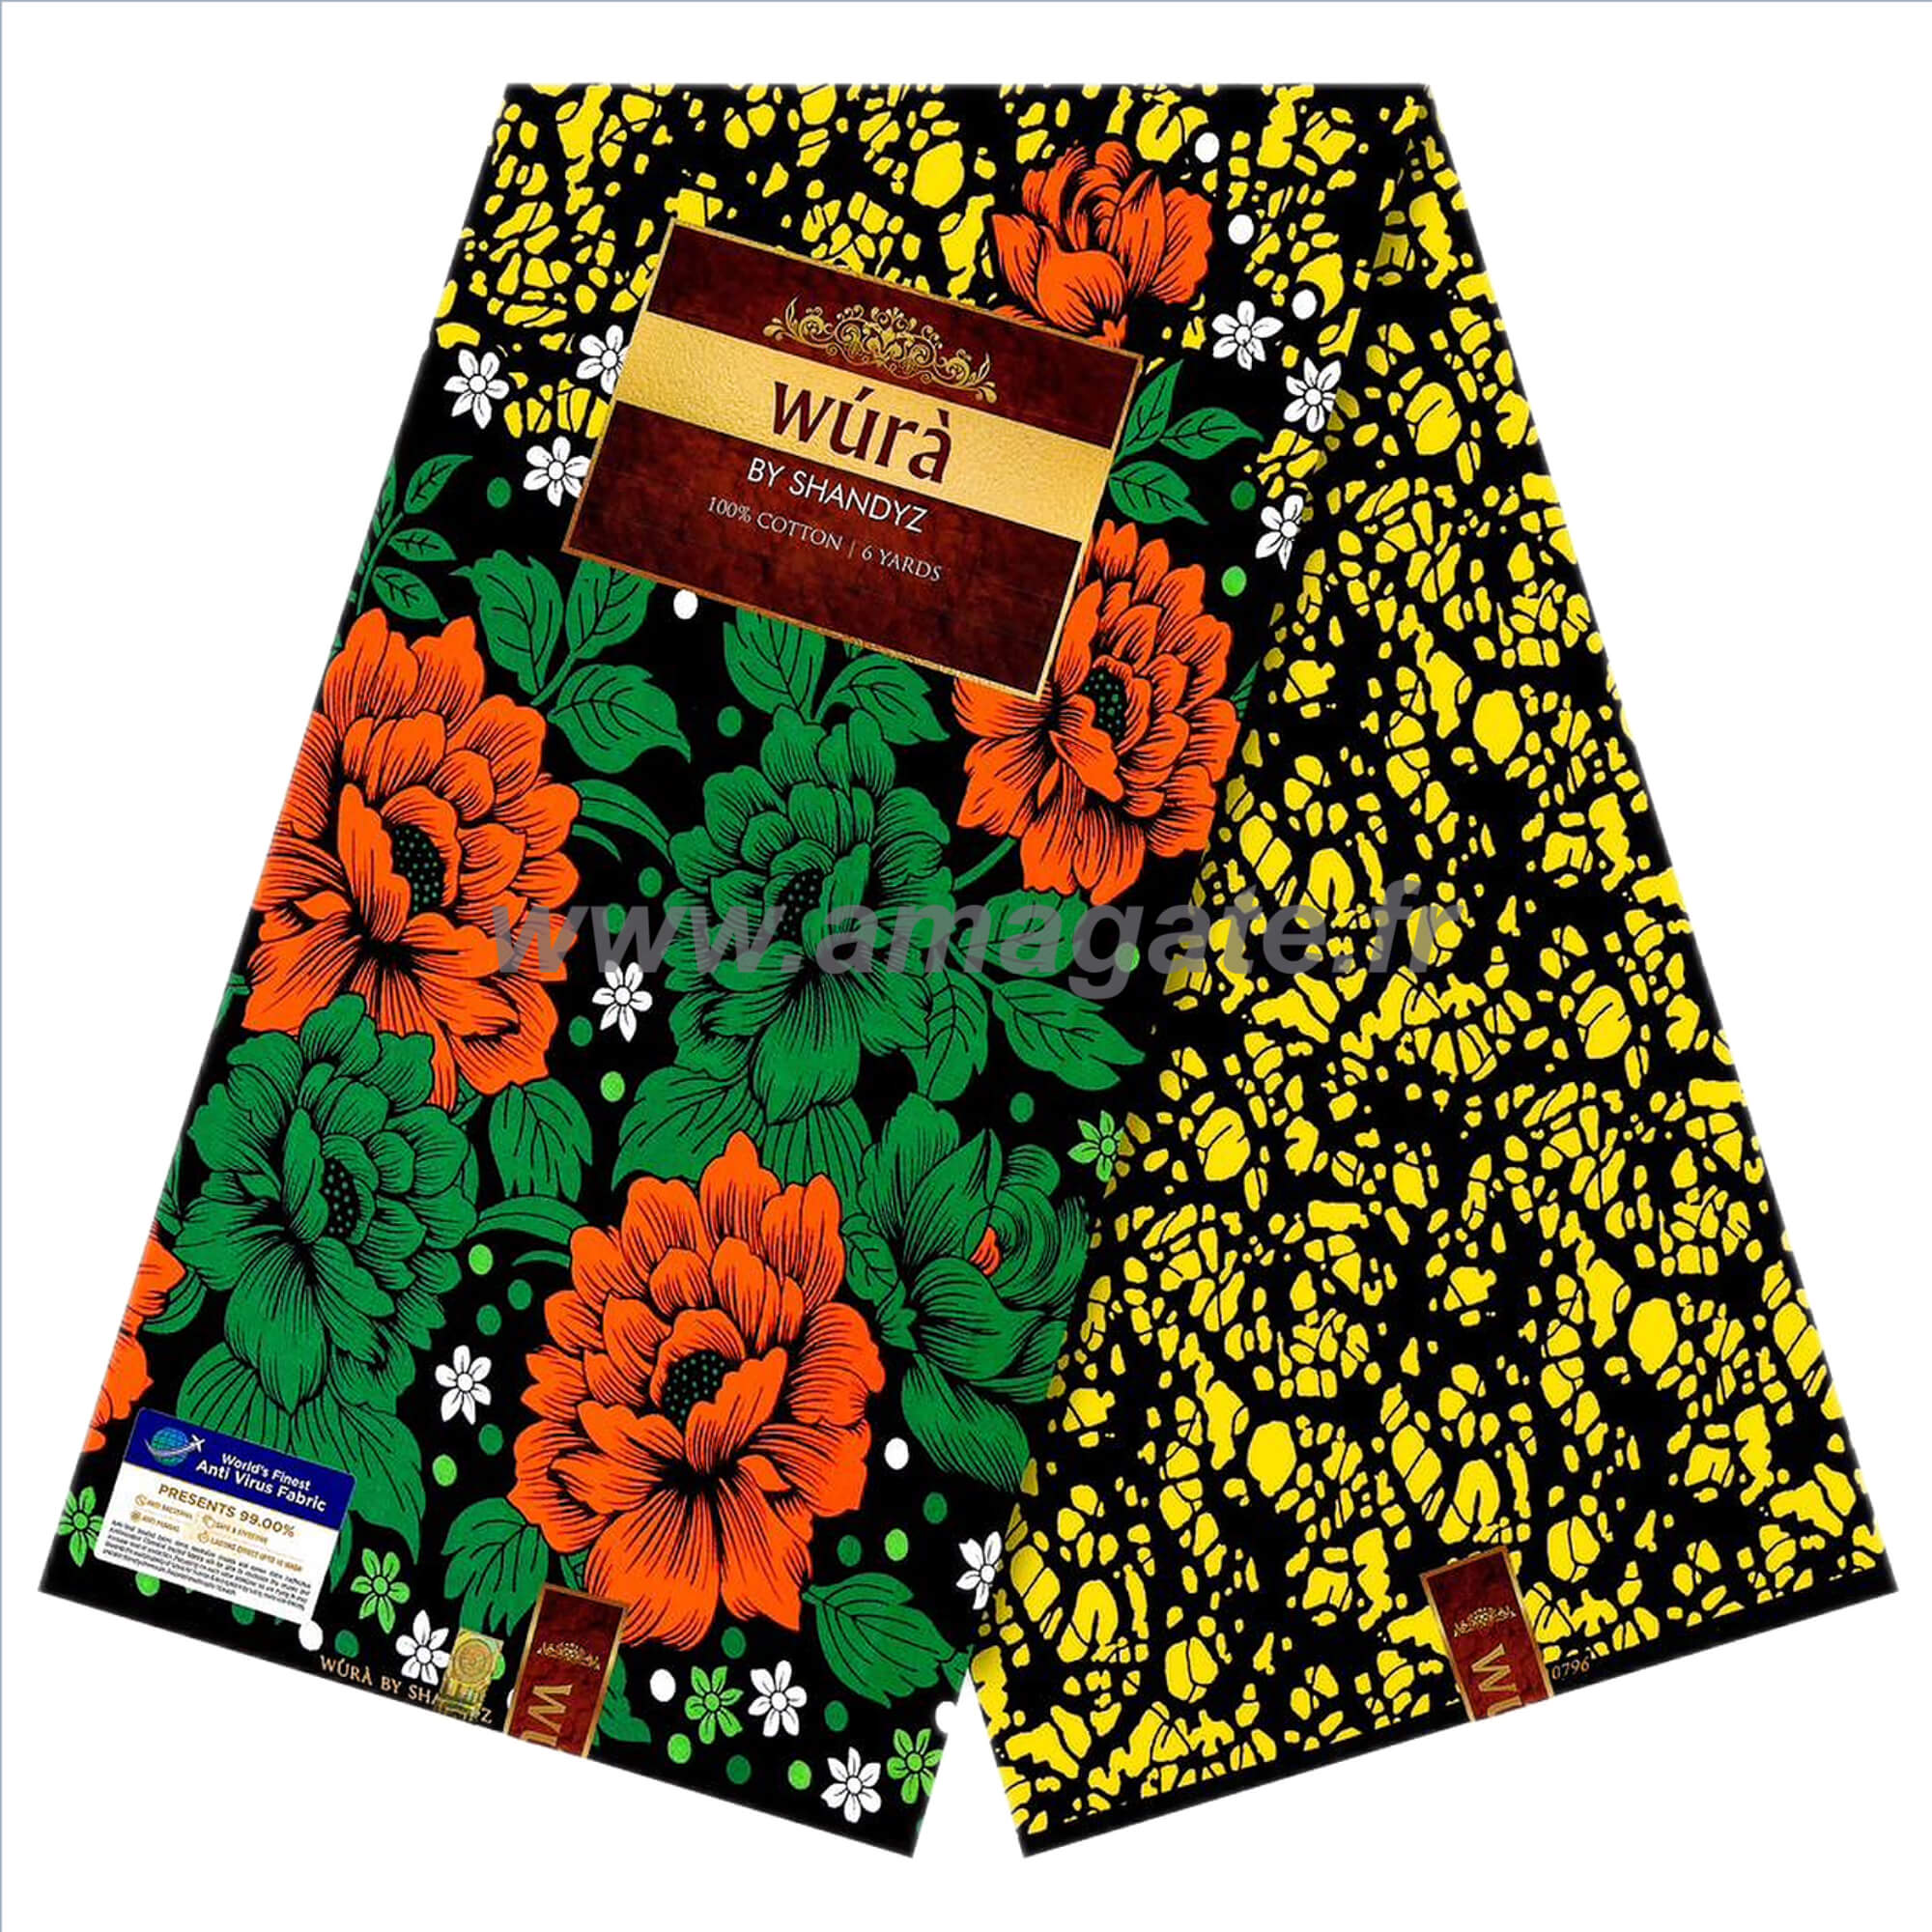 Tissu - Wax 100% coton - Fleurs - Orange / Vert / Jaune